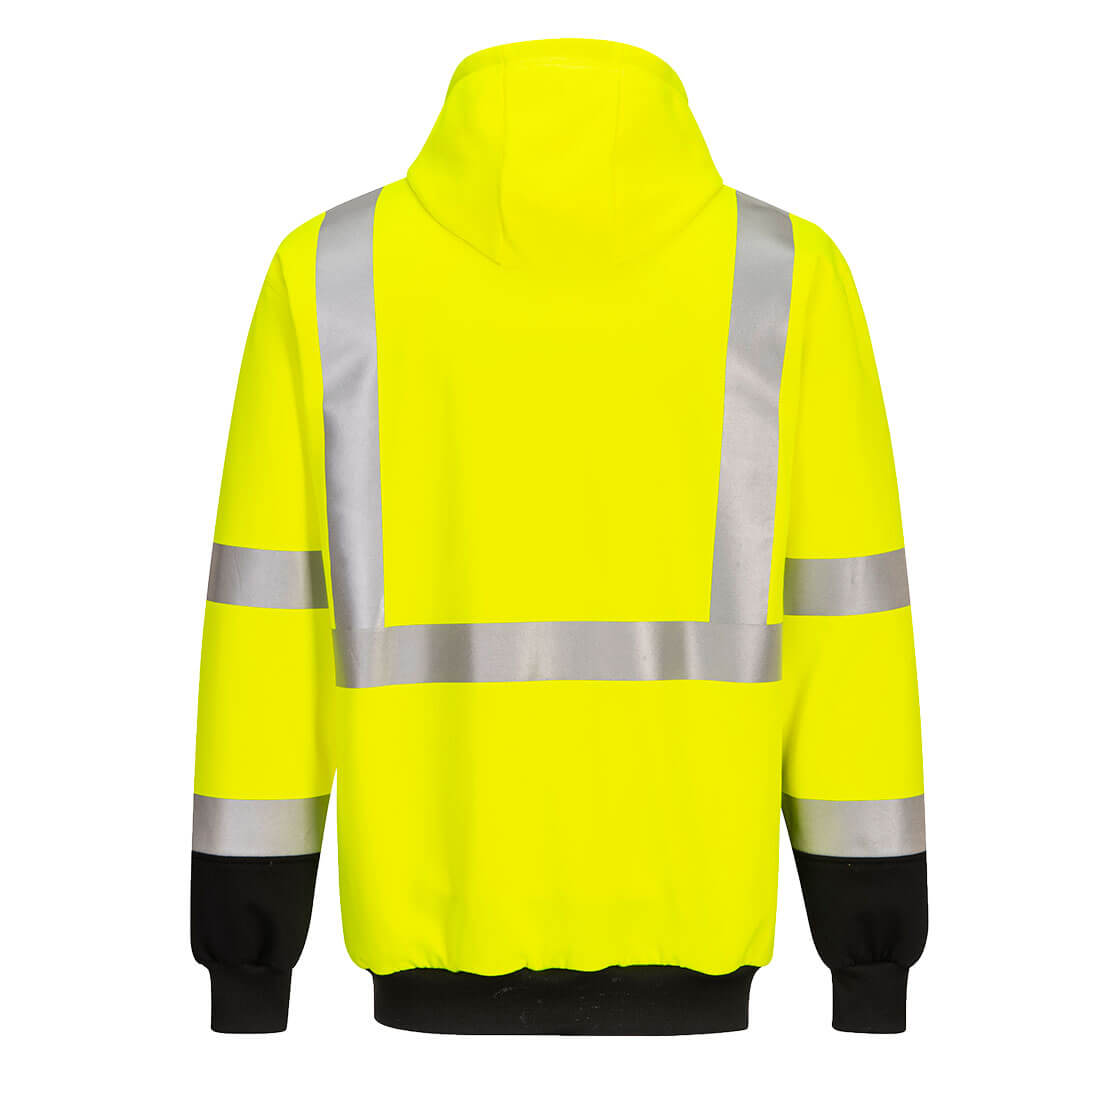 UB324 - Two-Tone Hooded Sweatshirt Yellow/Black - starequipmentsales